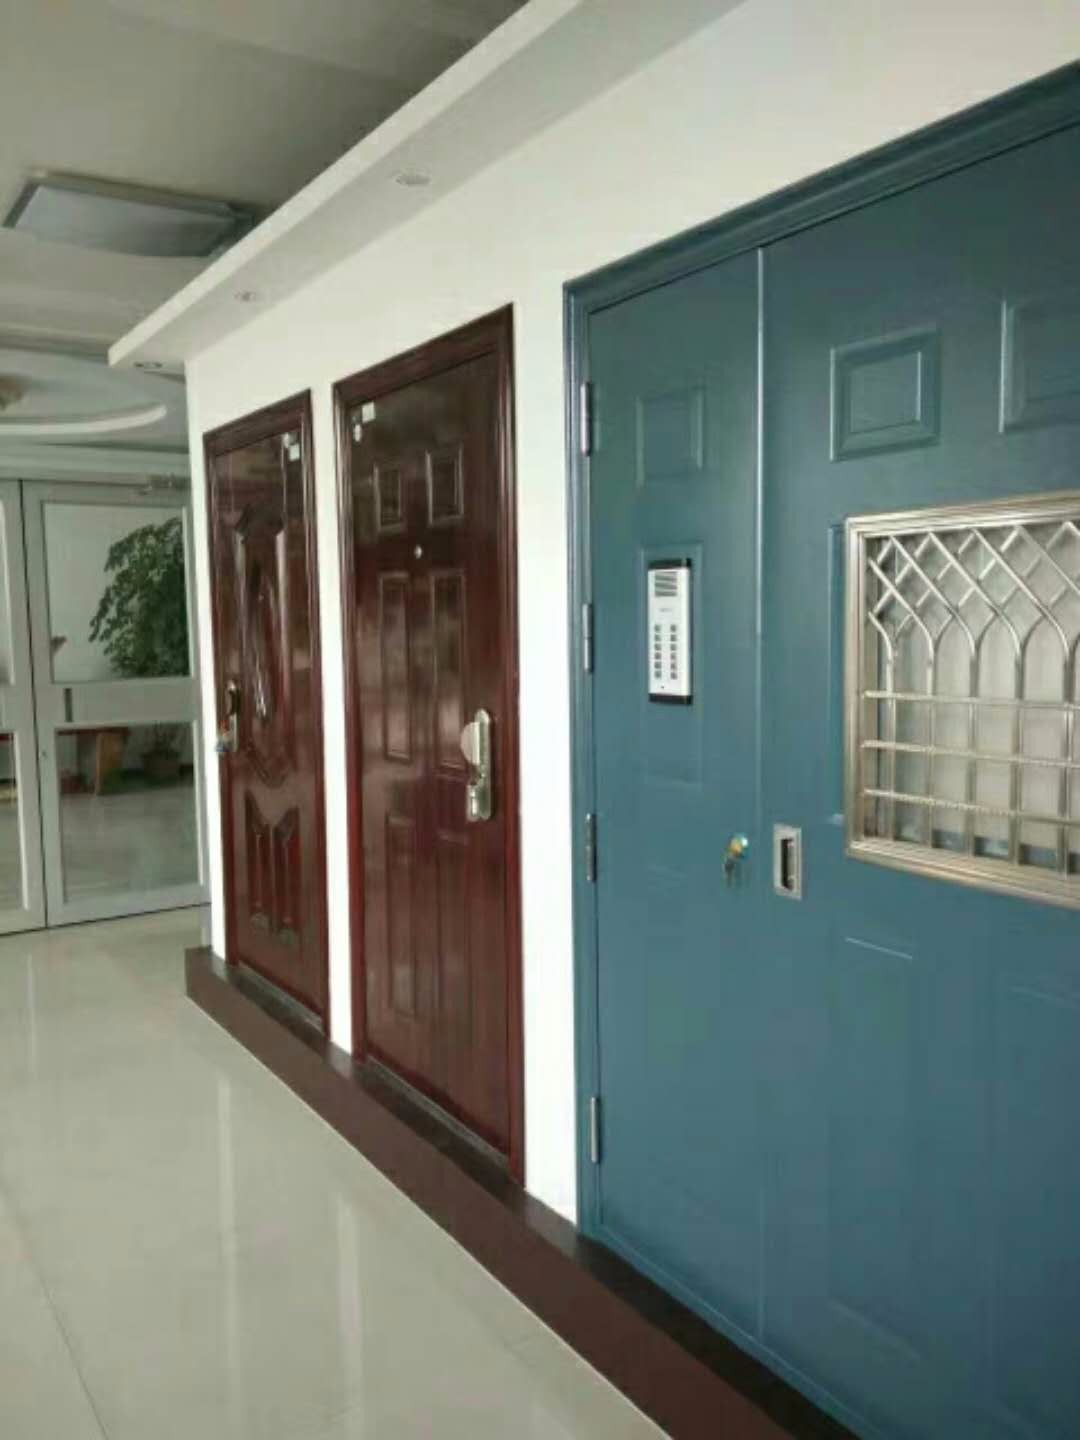 A security door